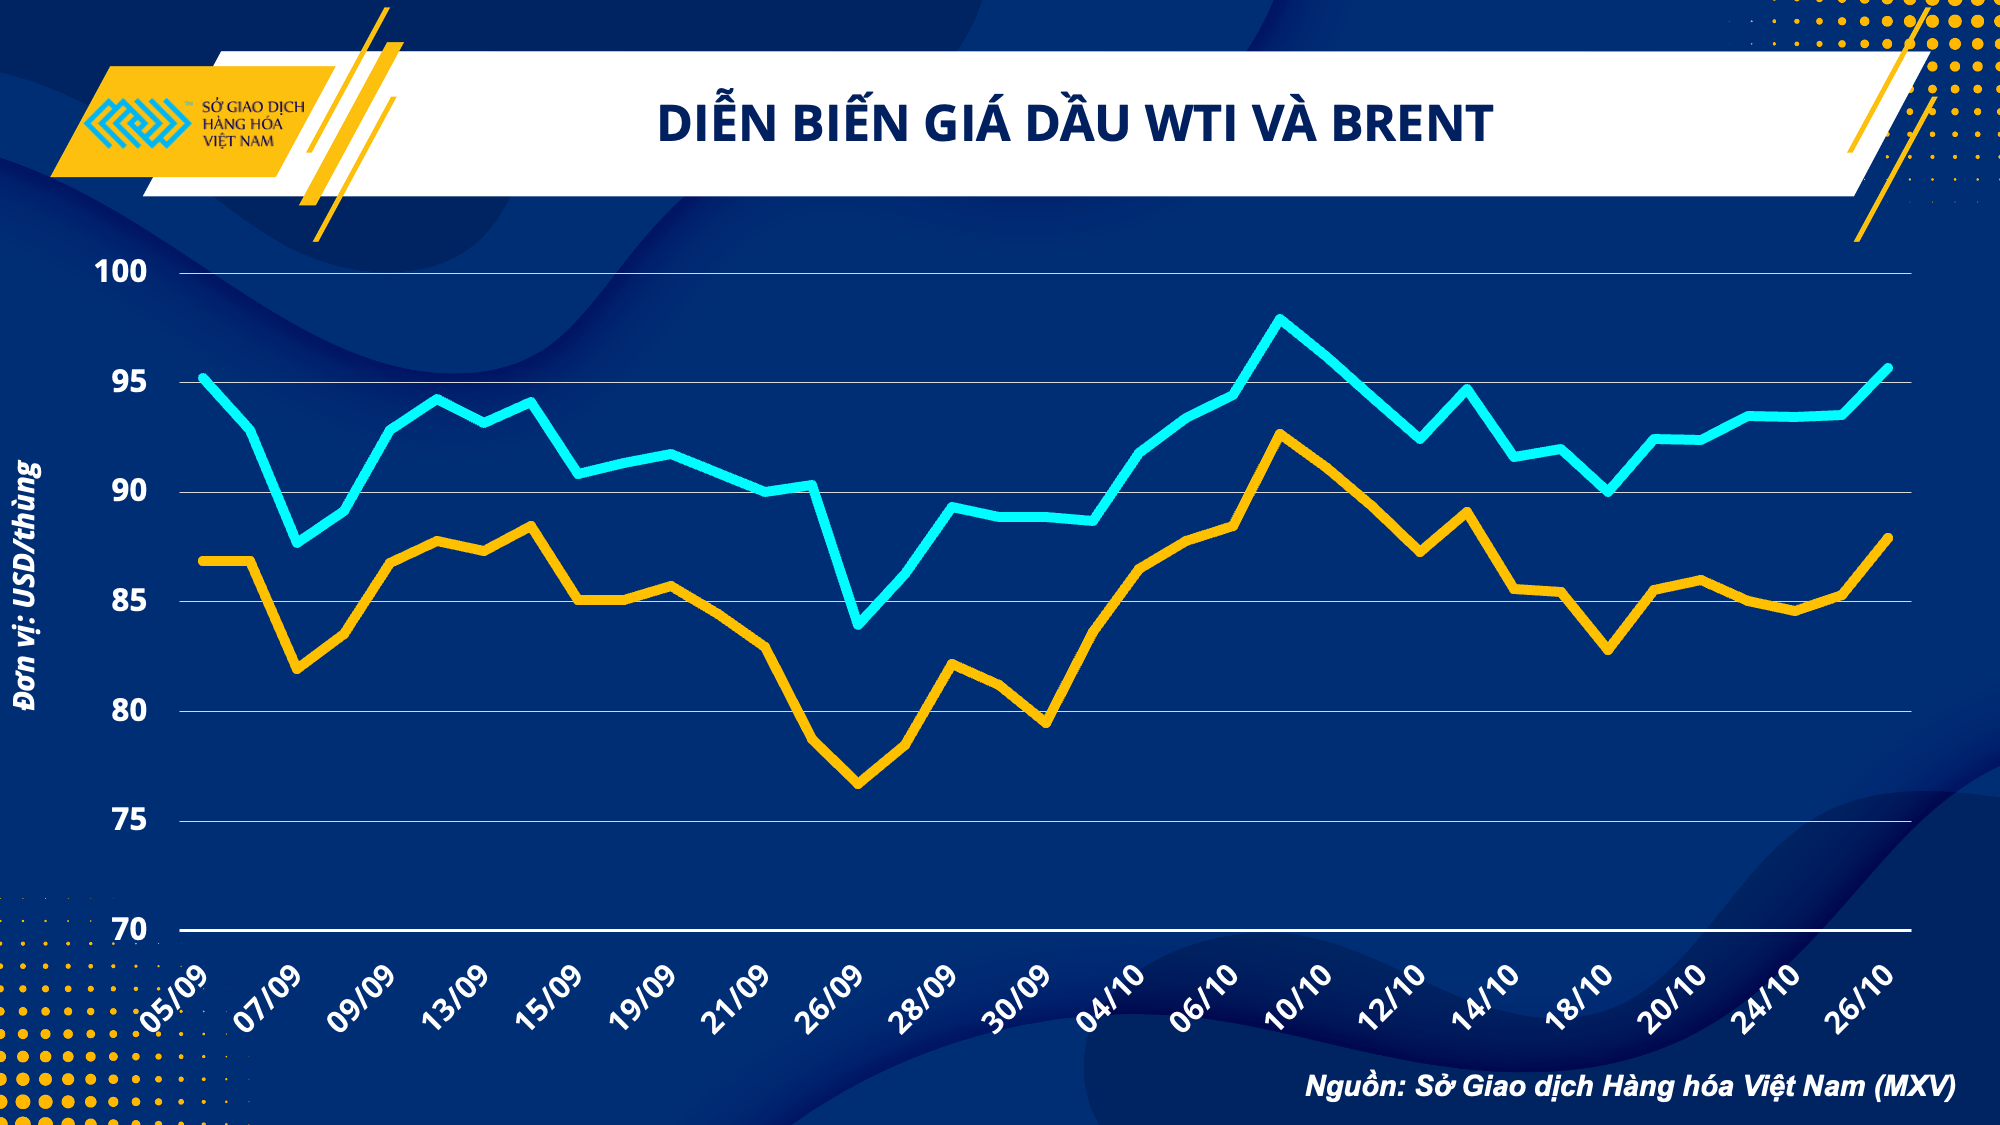 Biểu đồ diễn biến giá dầu WTI và BRENT